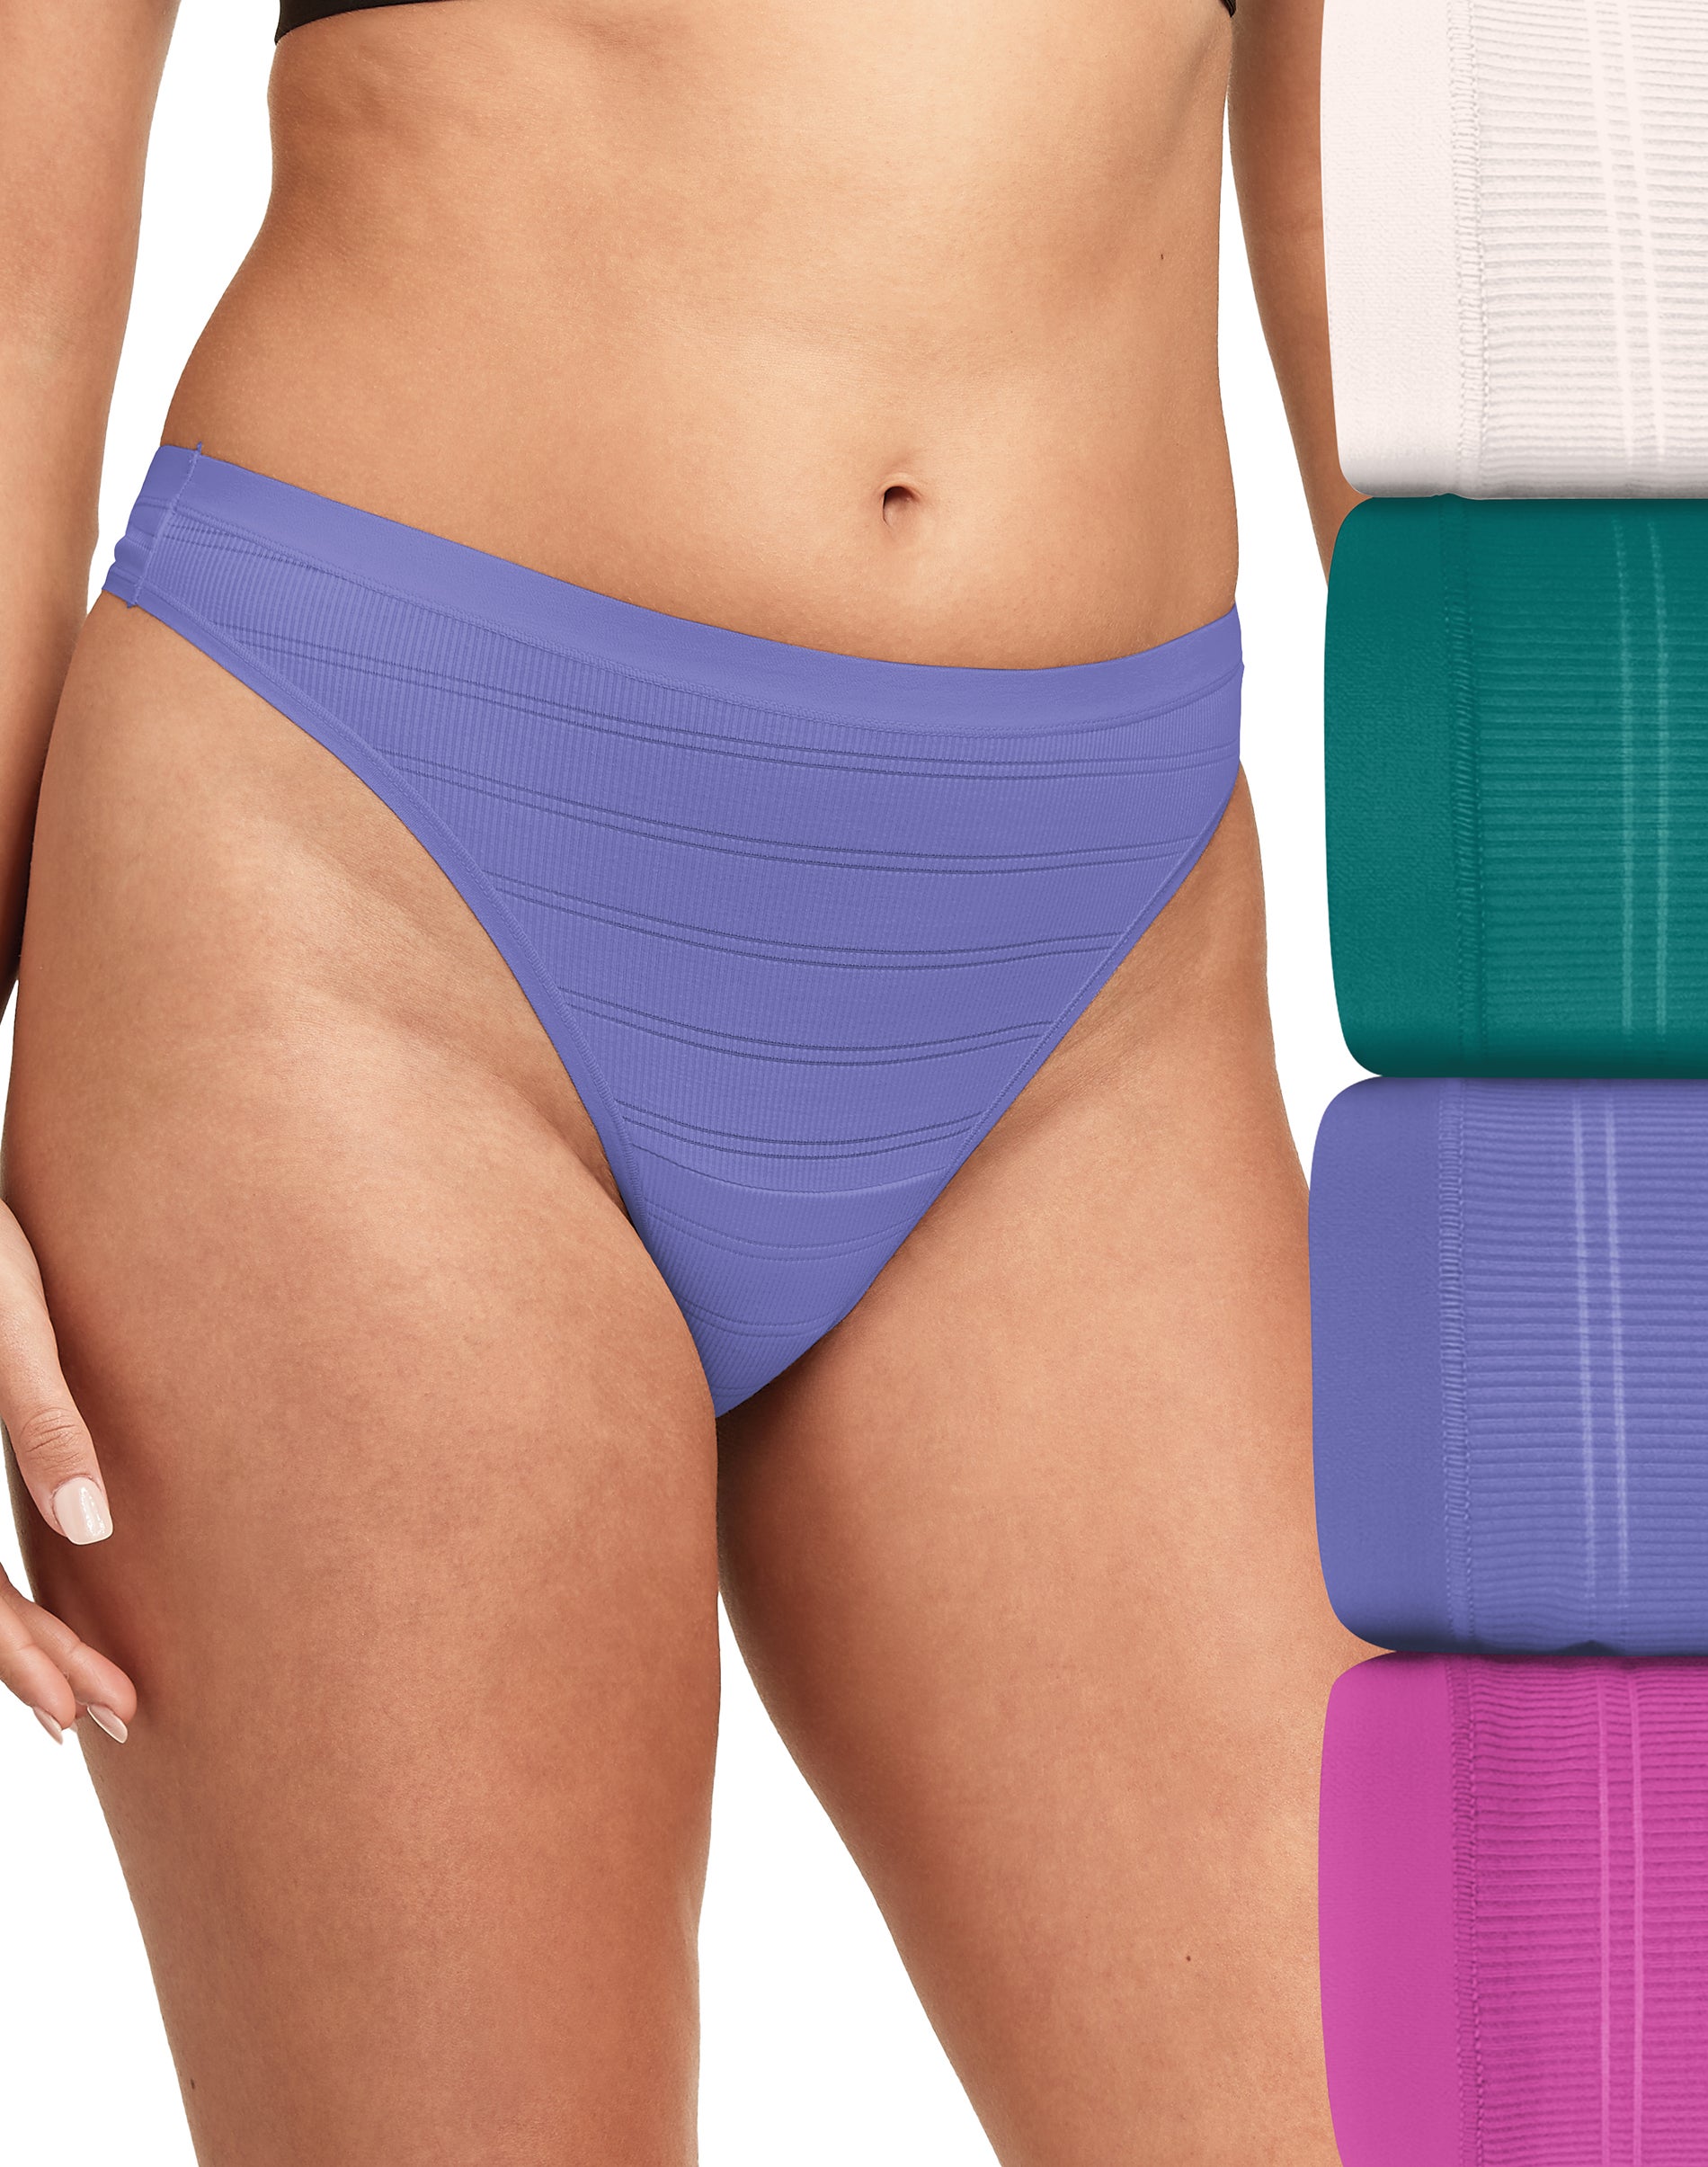 Hanes Women's Comfort Flex Fit Stretch Microfiber Modern Brief Underwear, 6-Pack  